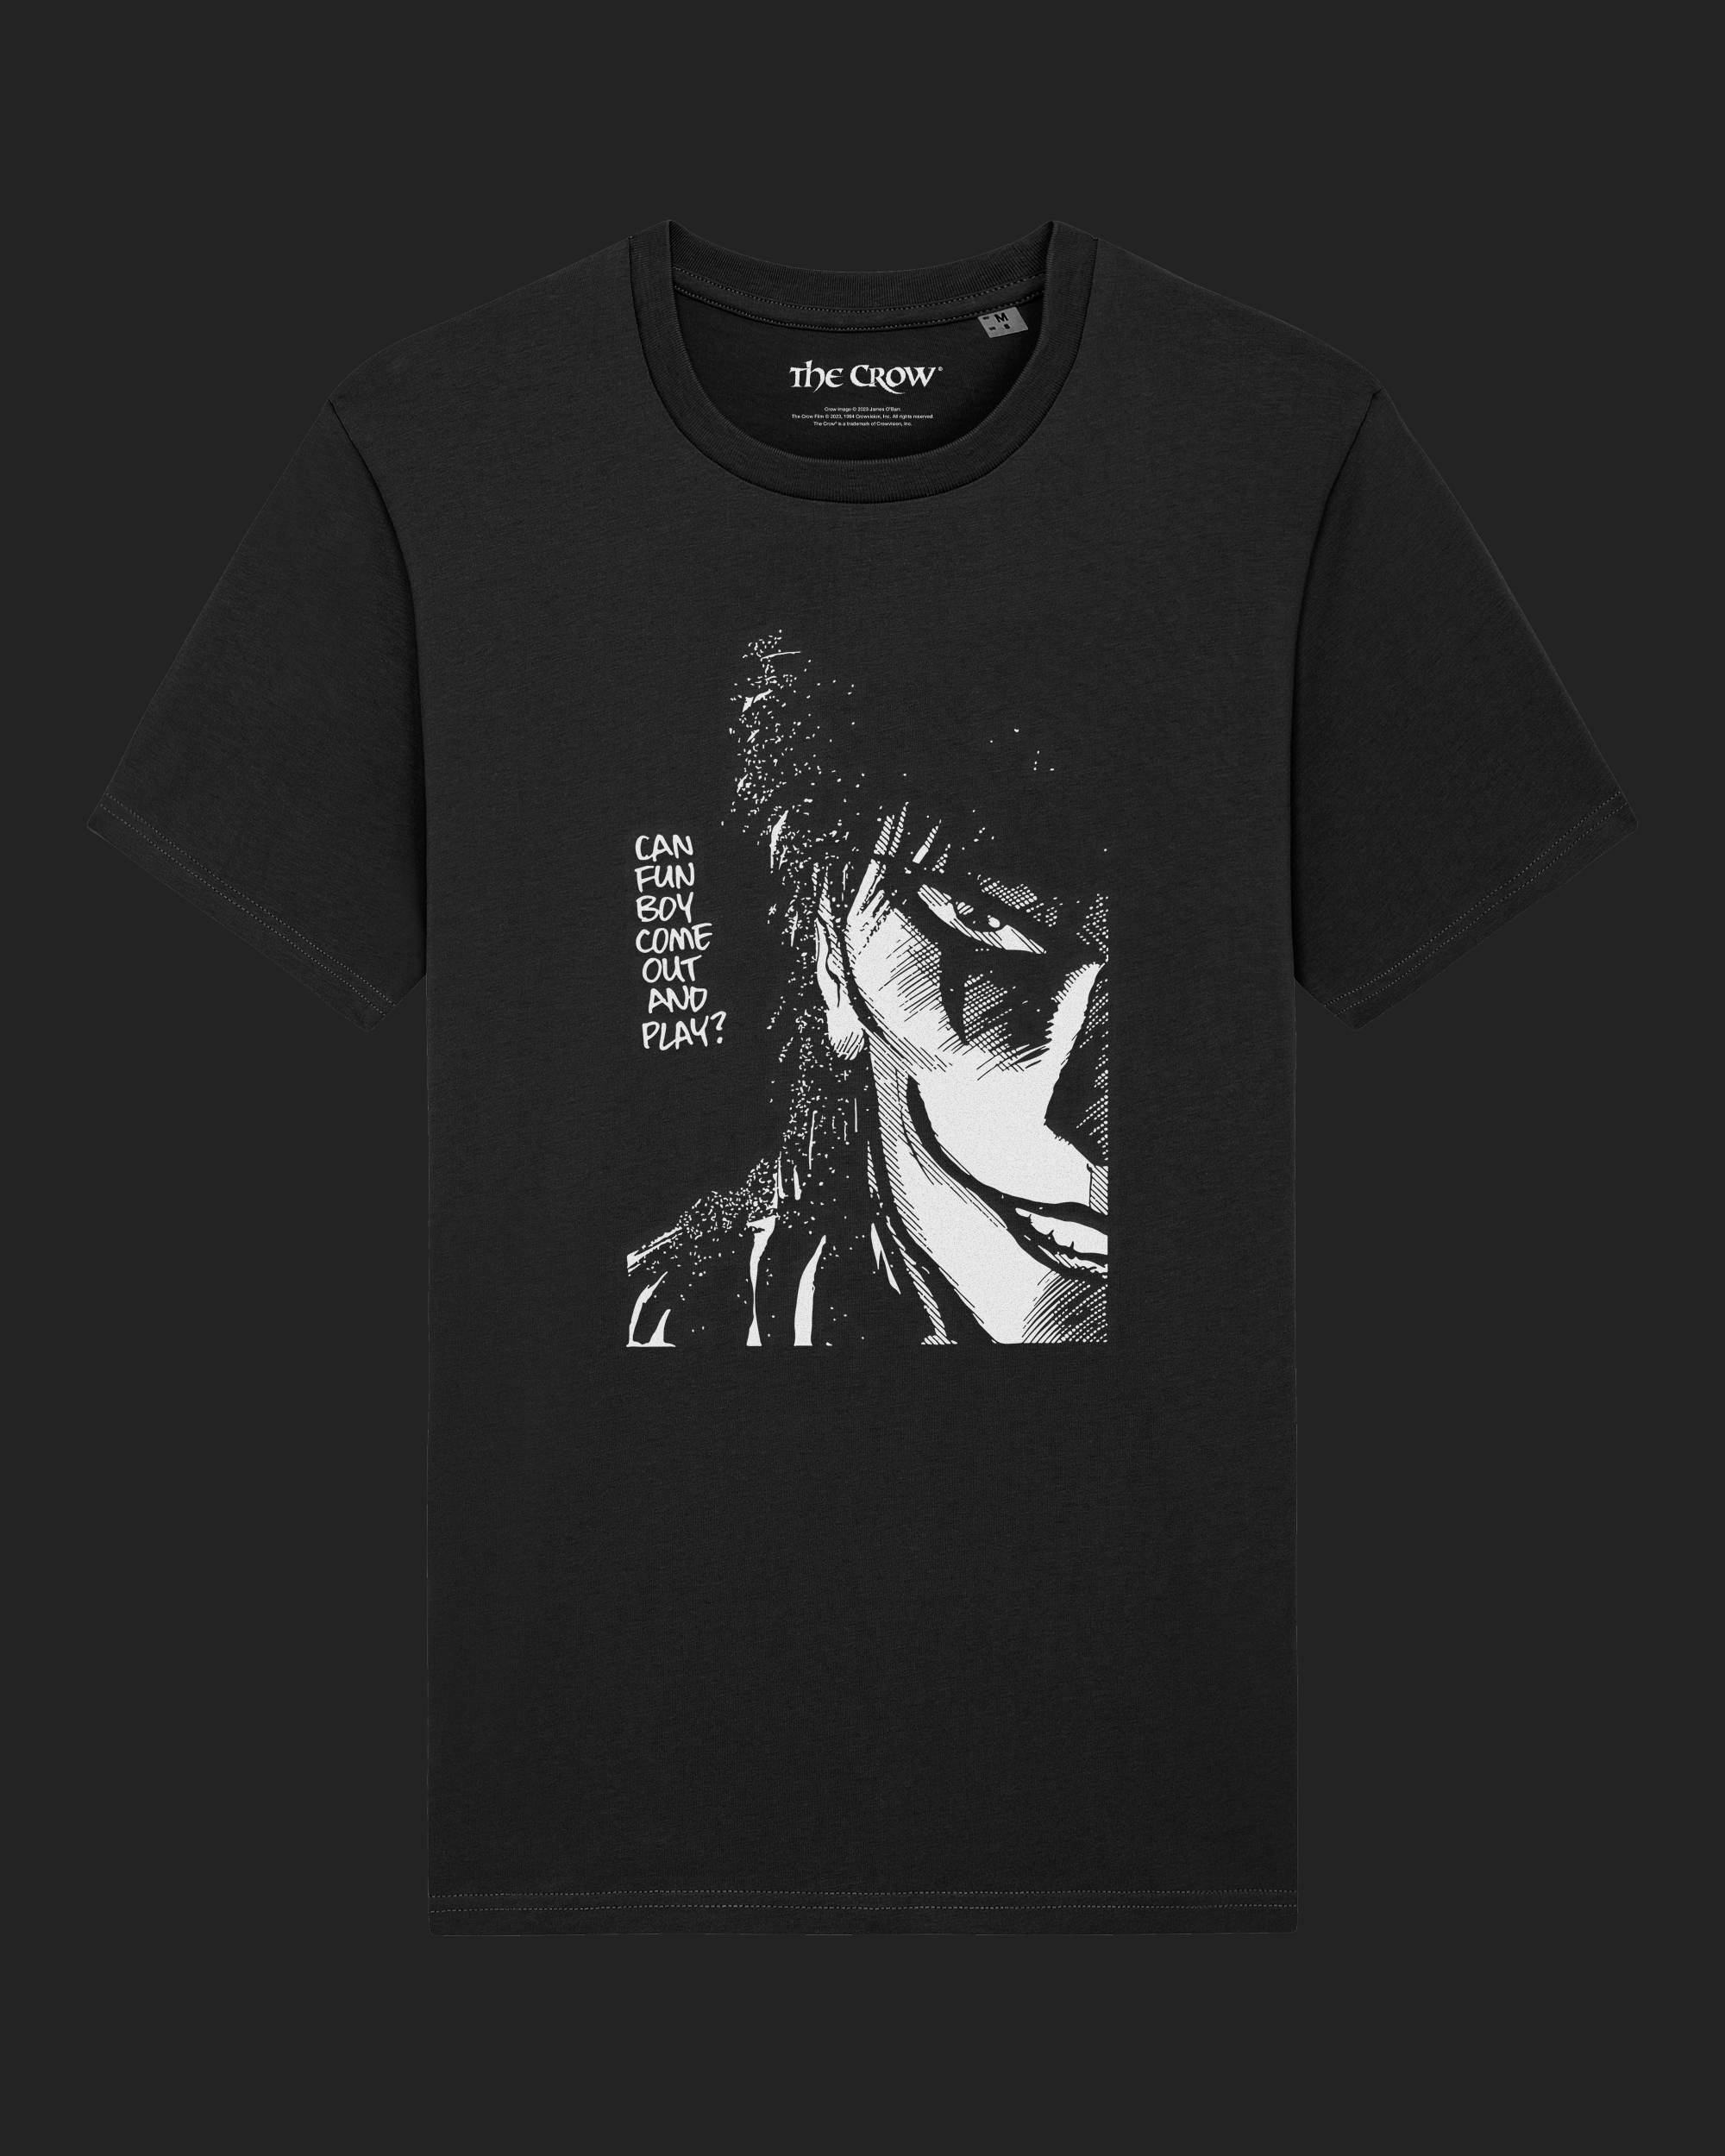 The Crow Portrait Black Unisex T-Shirt By James O'Barr The Crow Official  Store, The Crow T Shirt